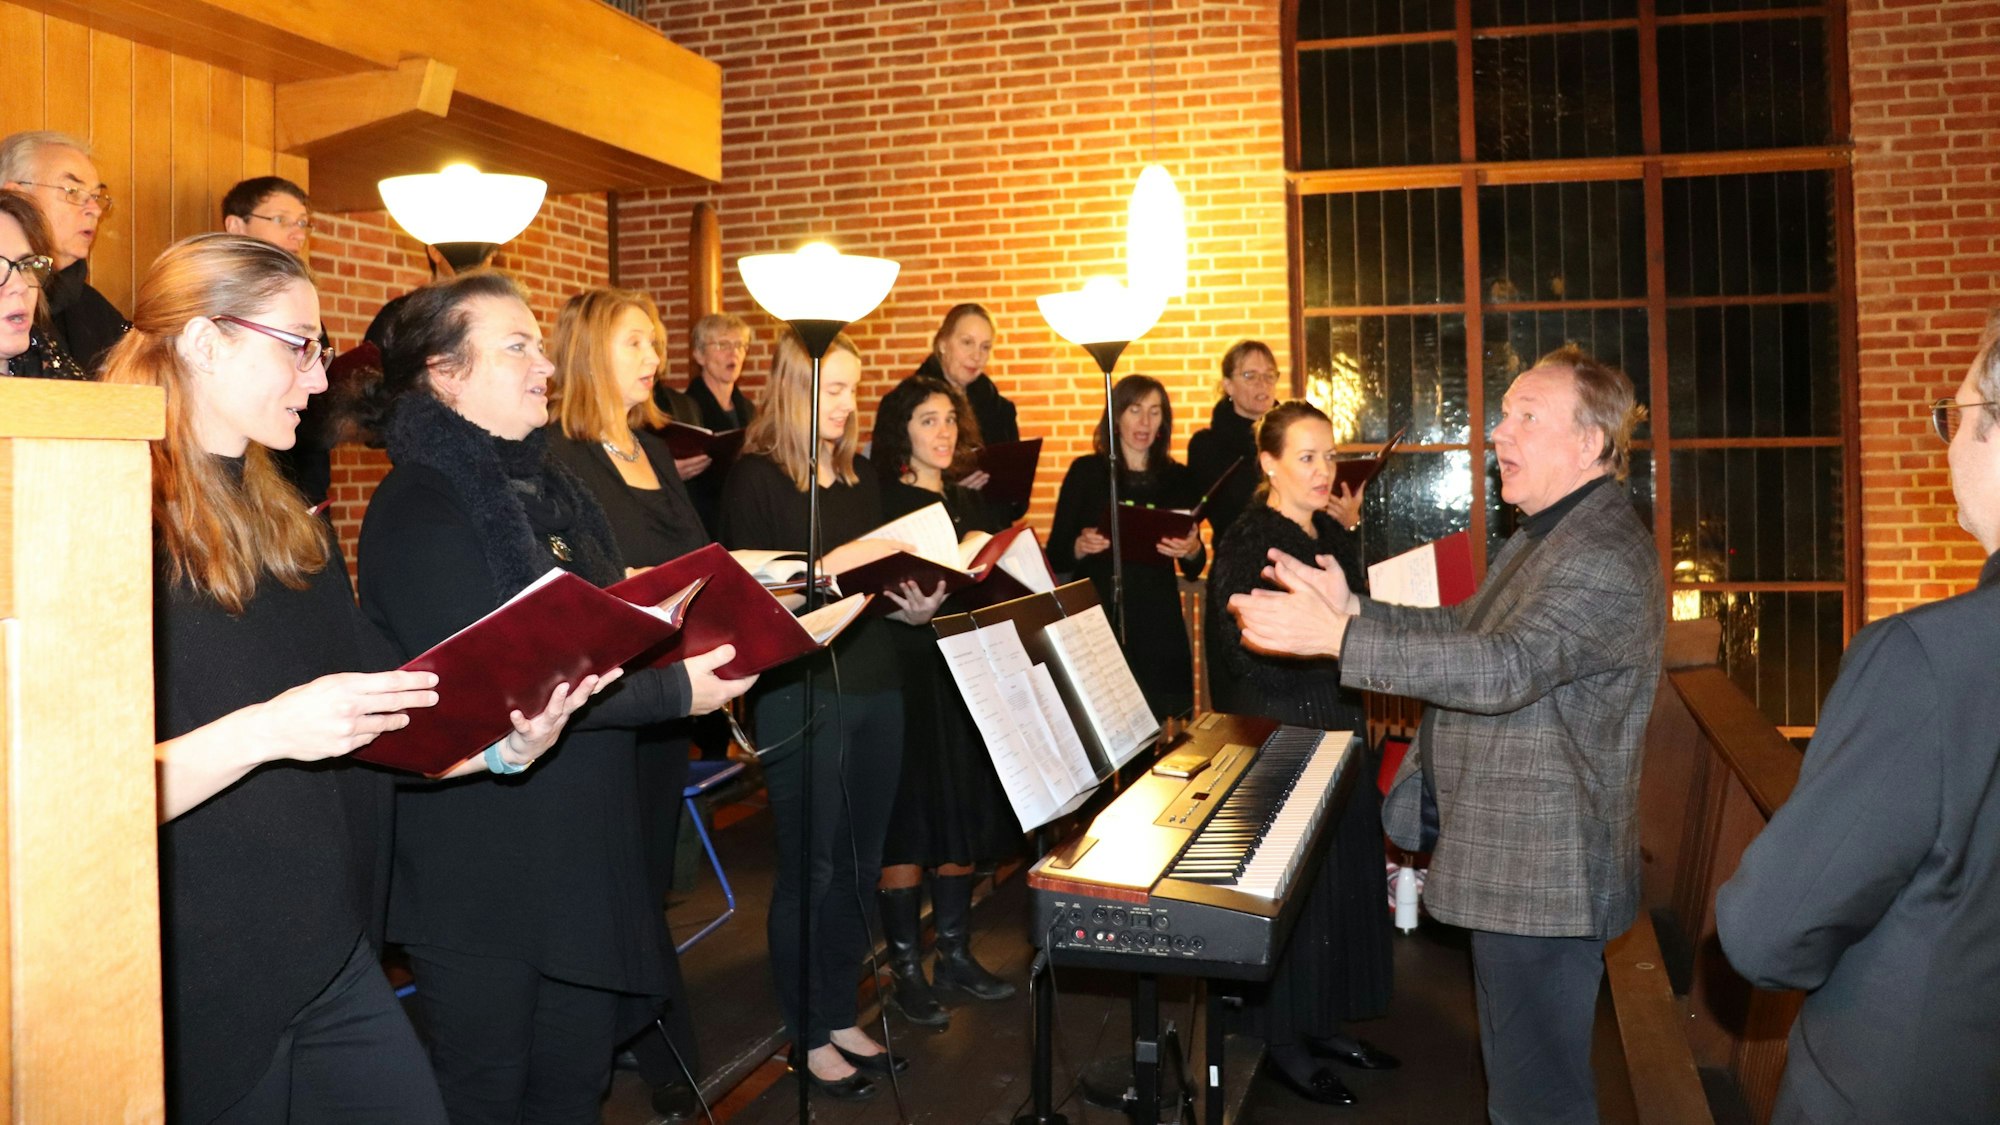 Sängerinnen mit Noten in der Hand und ein Chorleiter stehen im Halbkreis in einer Kirche.